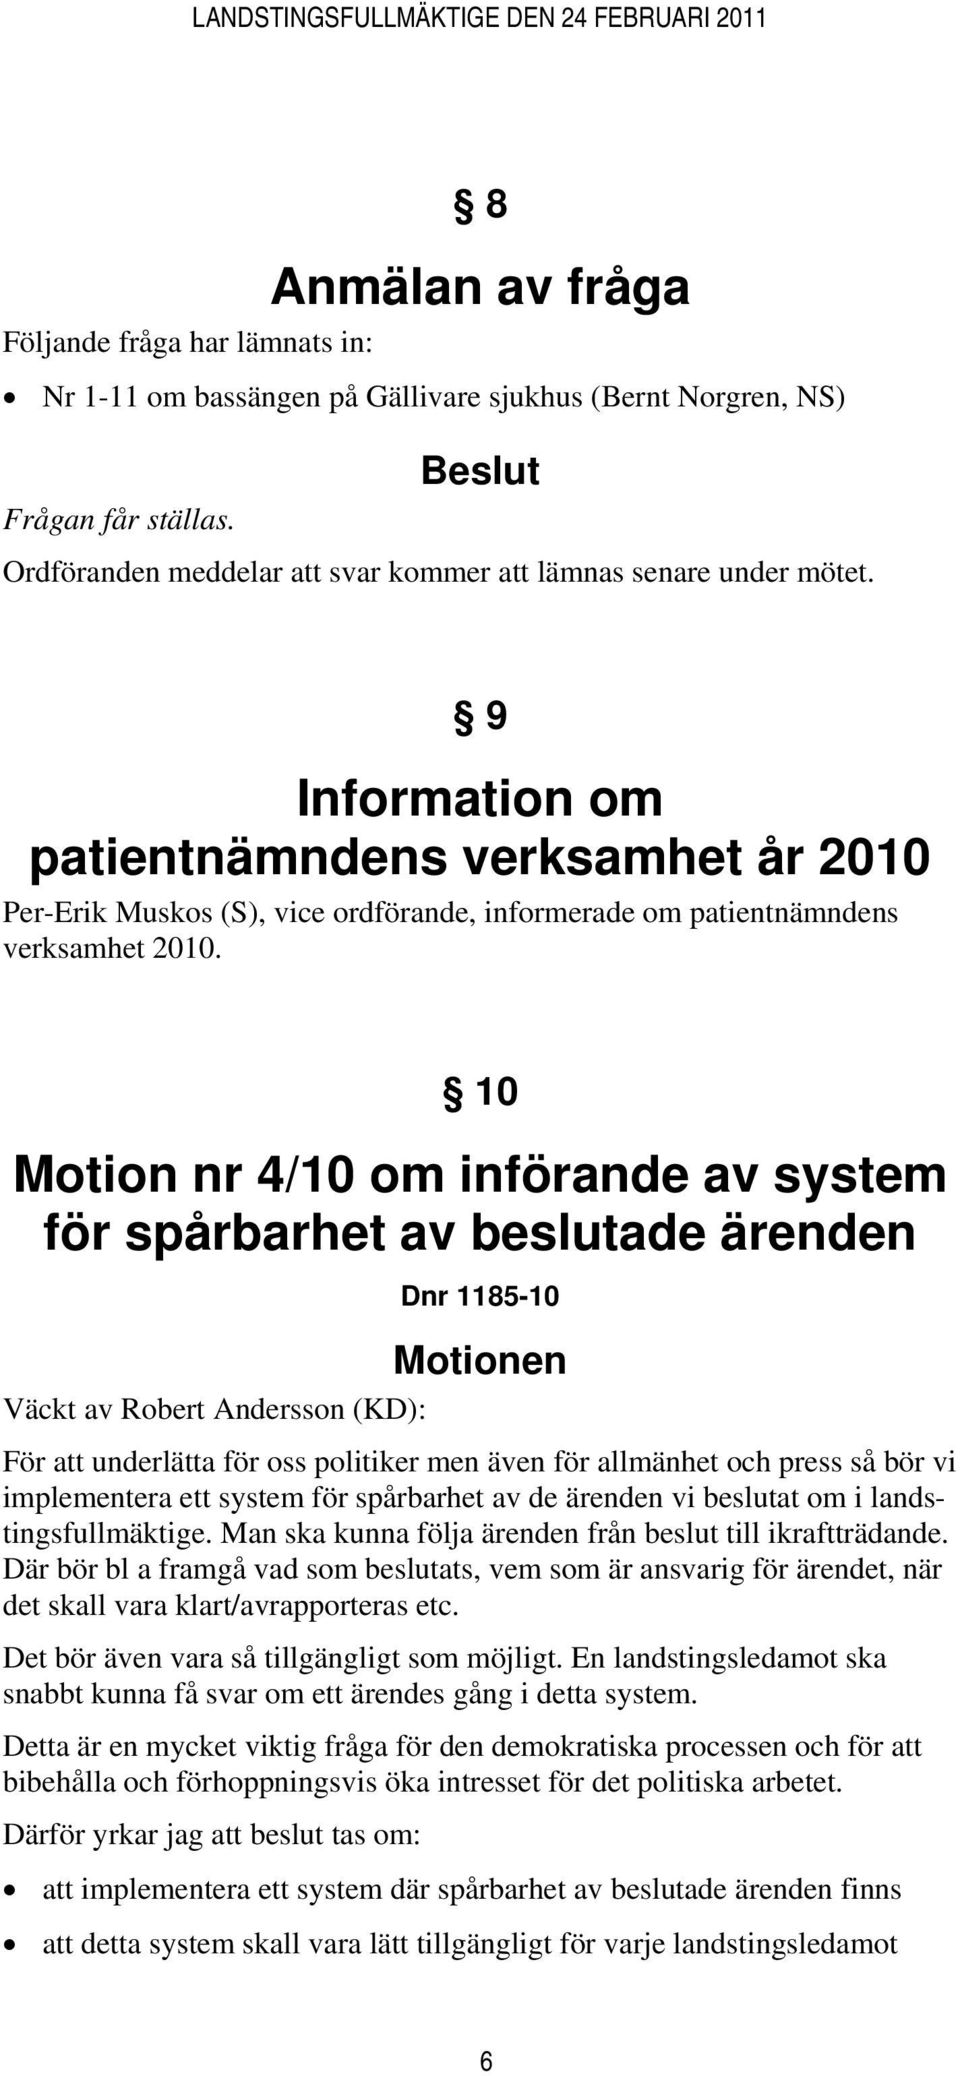 9 Information om patientnämndens verksamhet år 2010 Per-Erik Muskos (S), vice ordförande, informerade om patientnämndens verksamhet 2010.